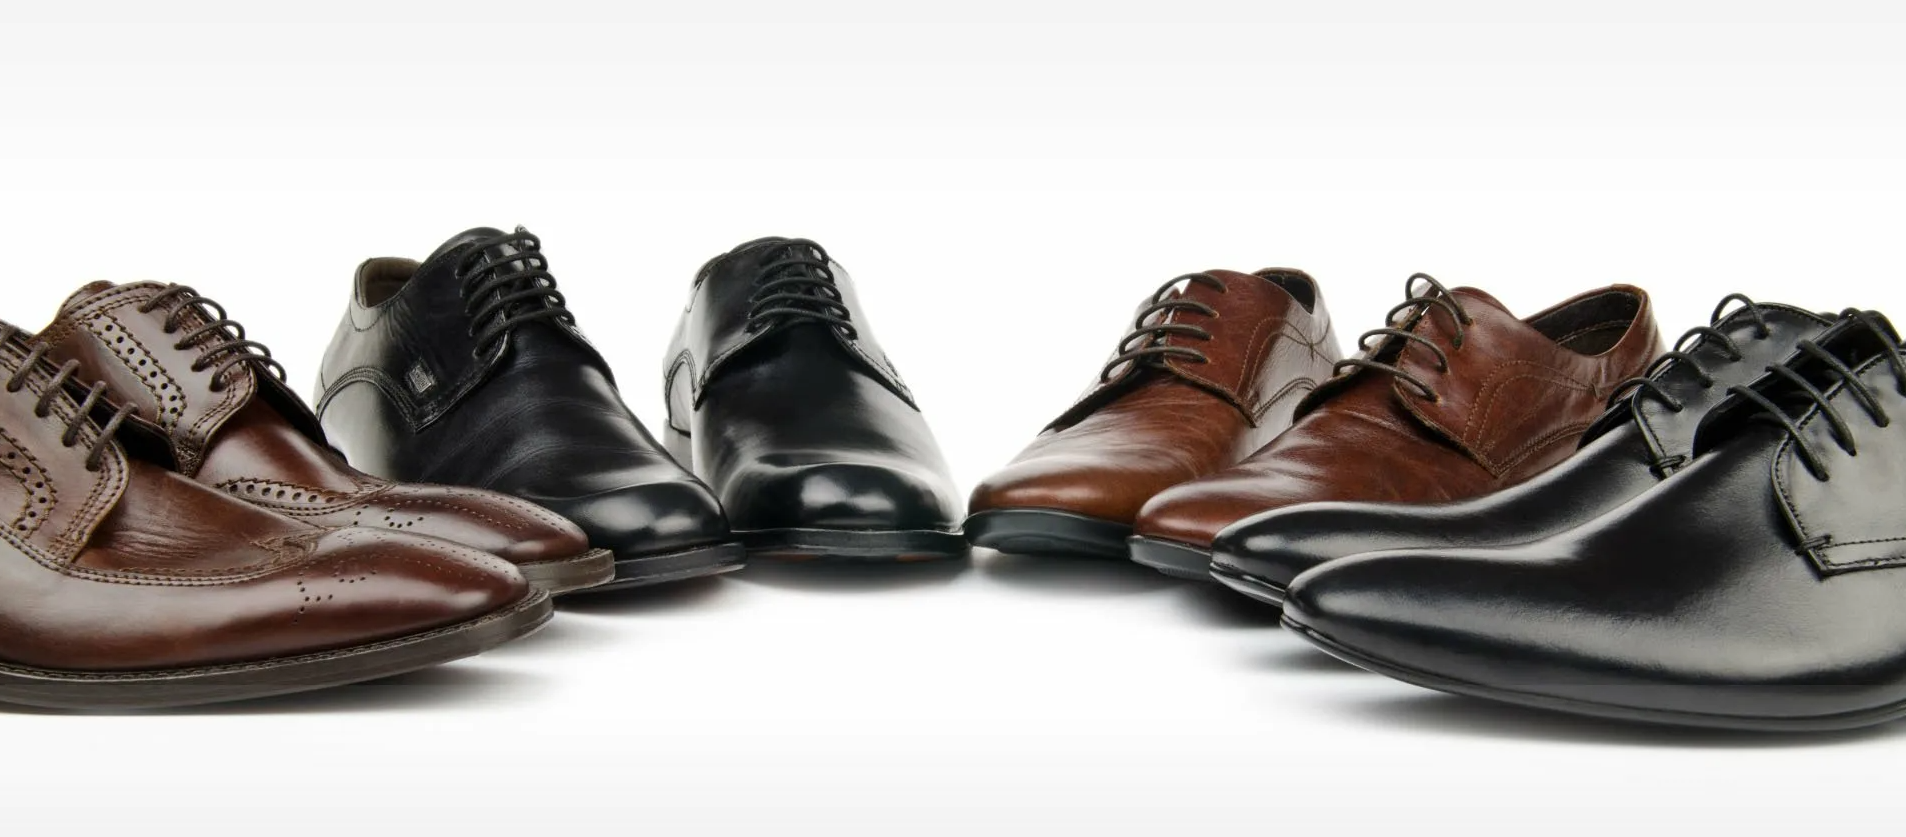 Брендовая обувь для мужчин: почему стоит выбирать качество?